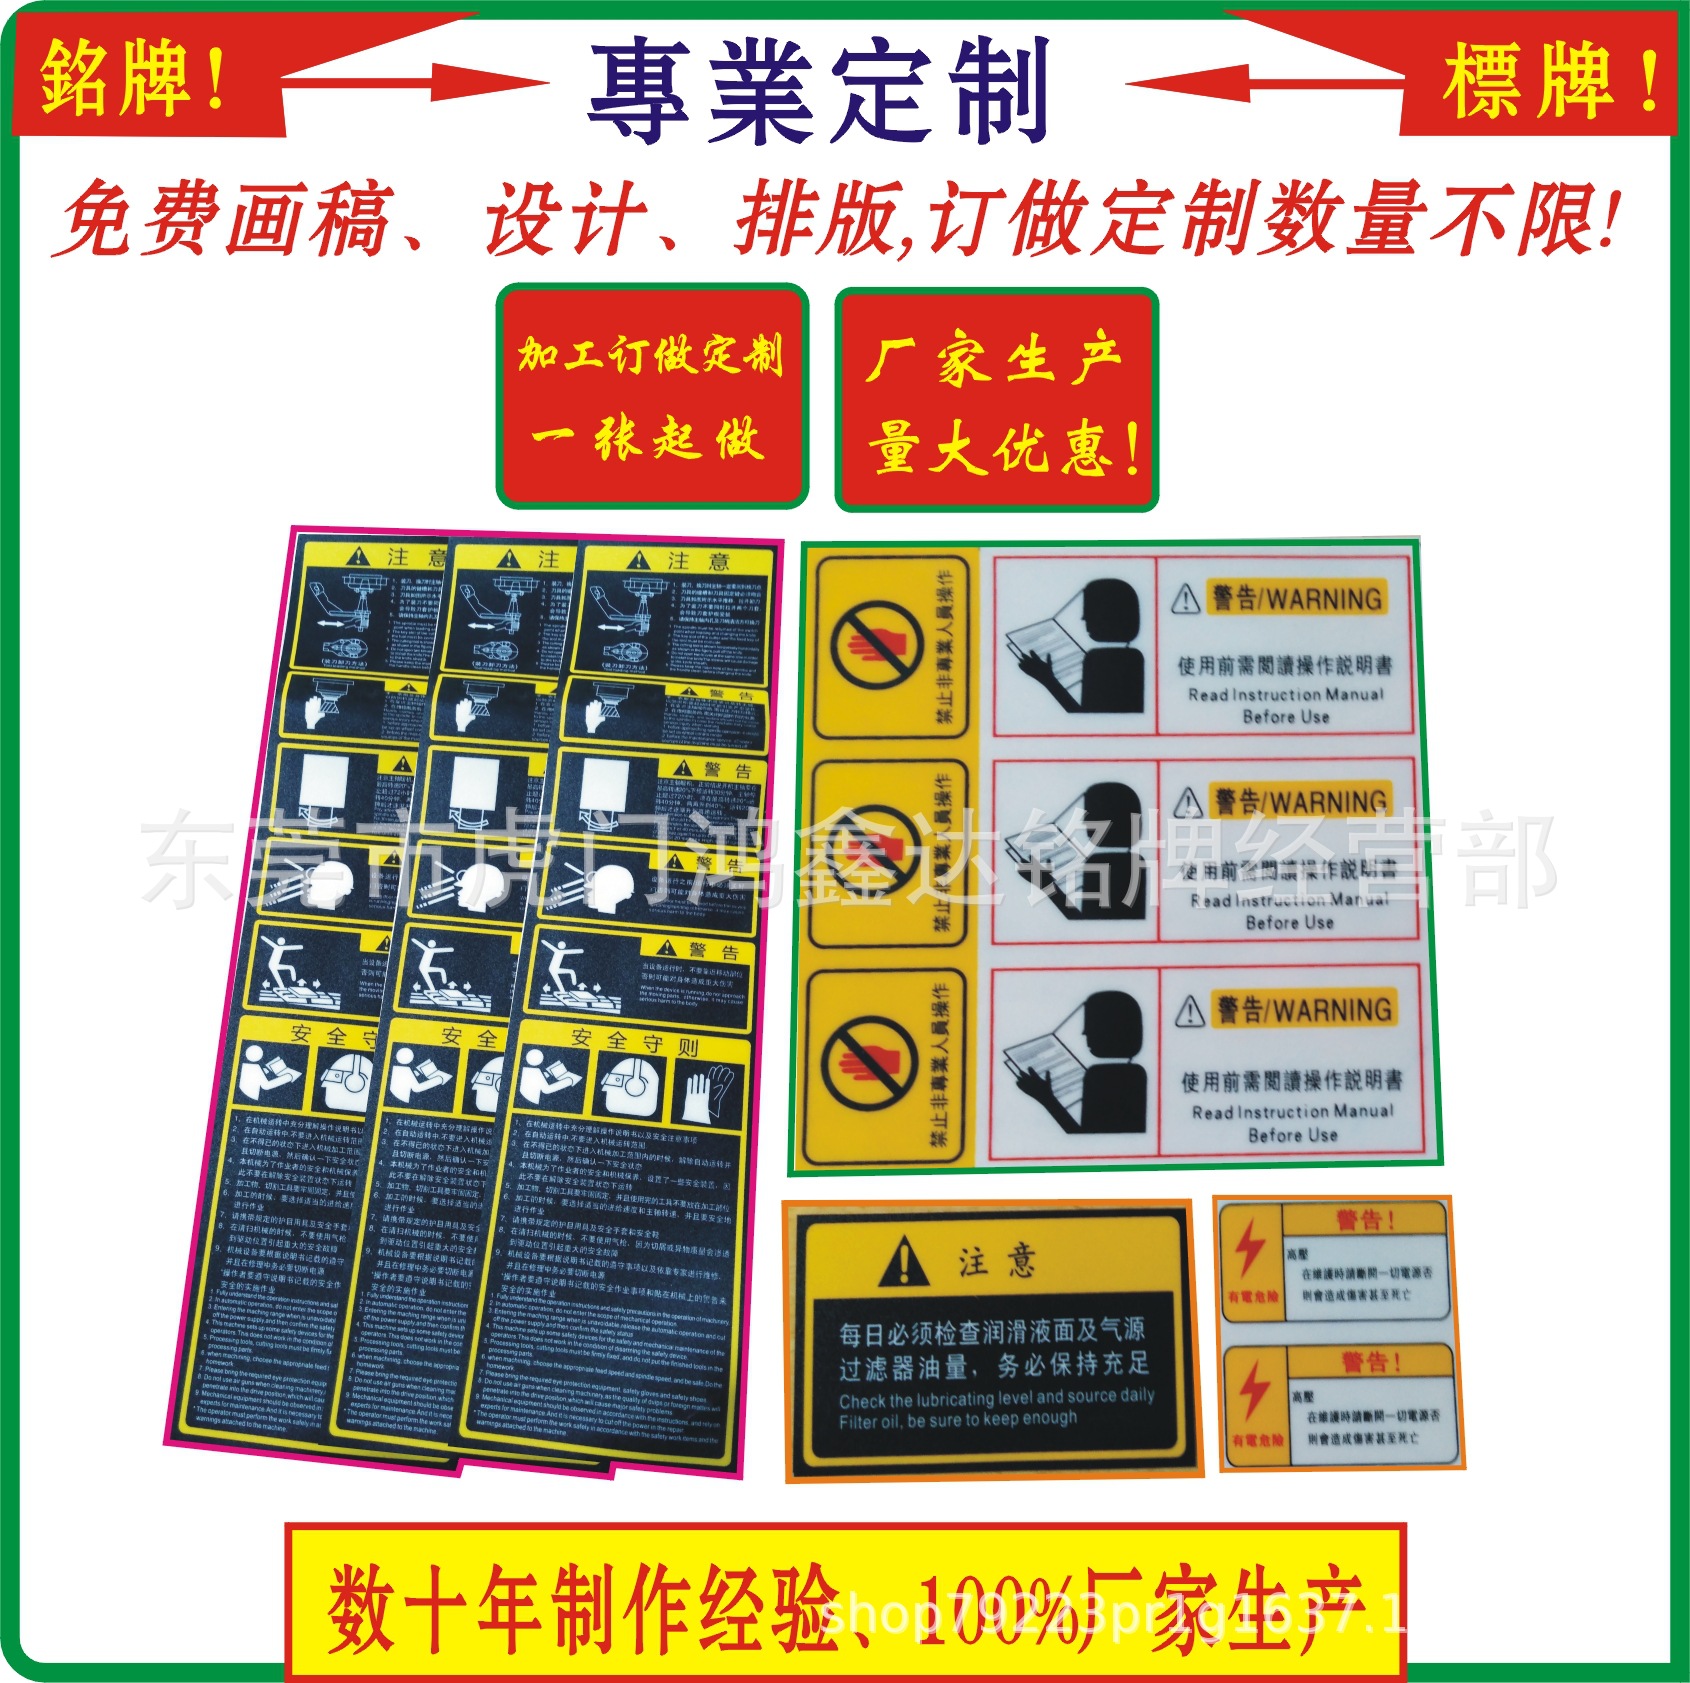 机床贴纸、pvc丝印标签、电器出厂标贴、设备出厂标贴，警示标签